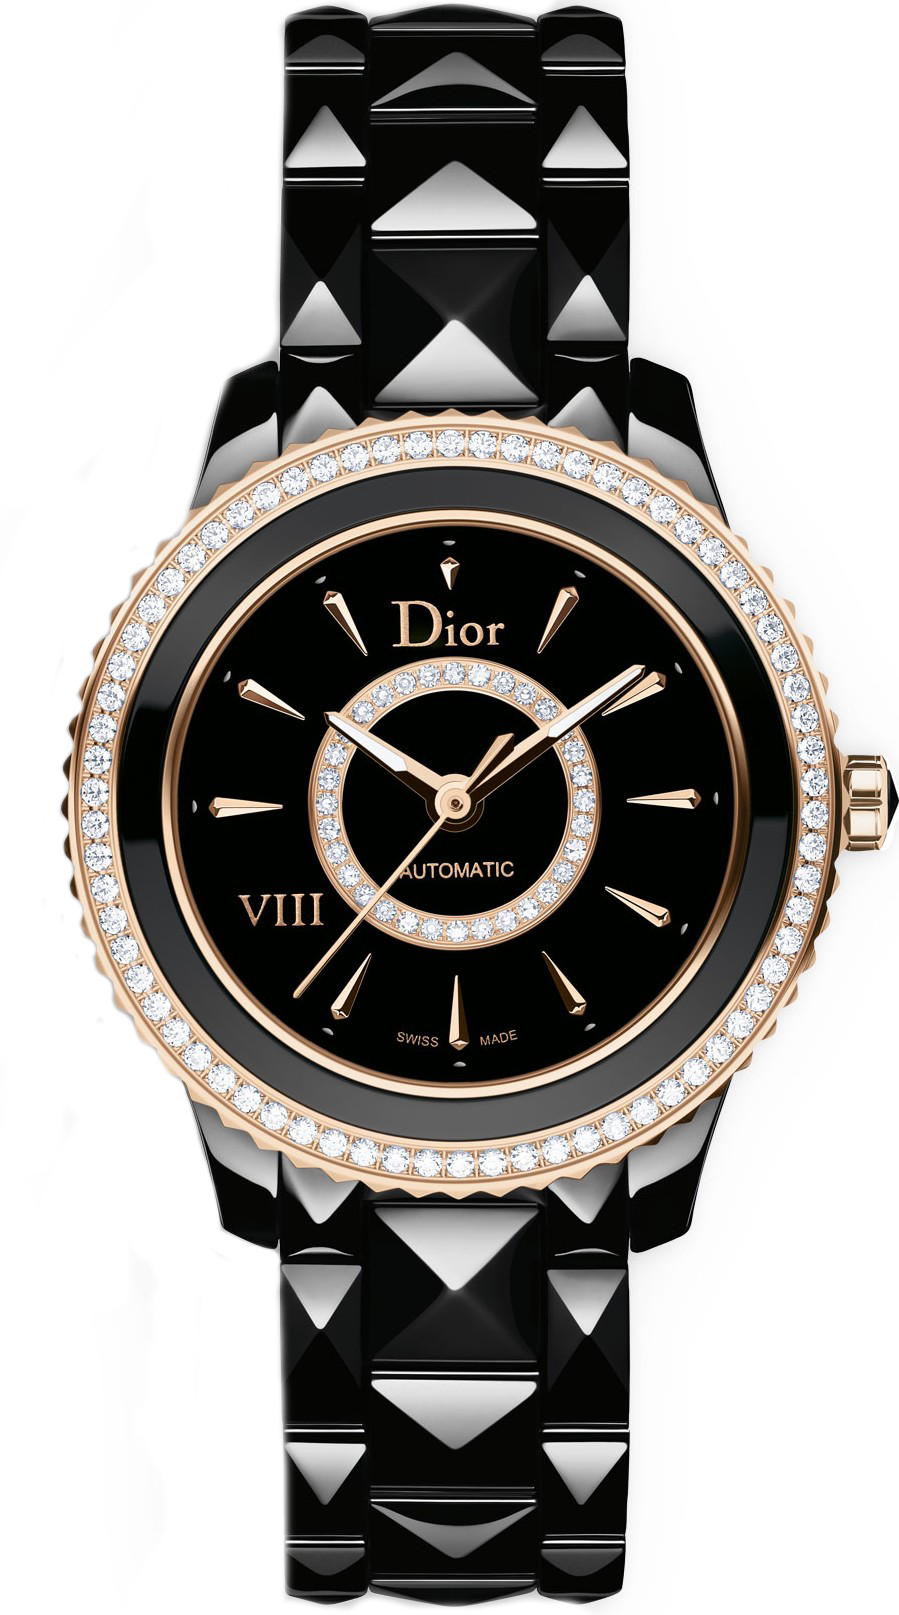 Đồng hồ Dior - Đánh giá và phân biệt Dior